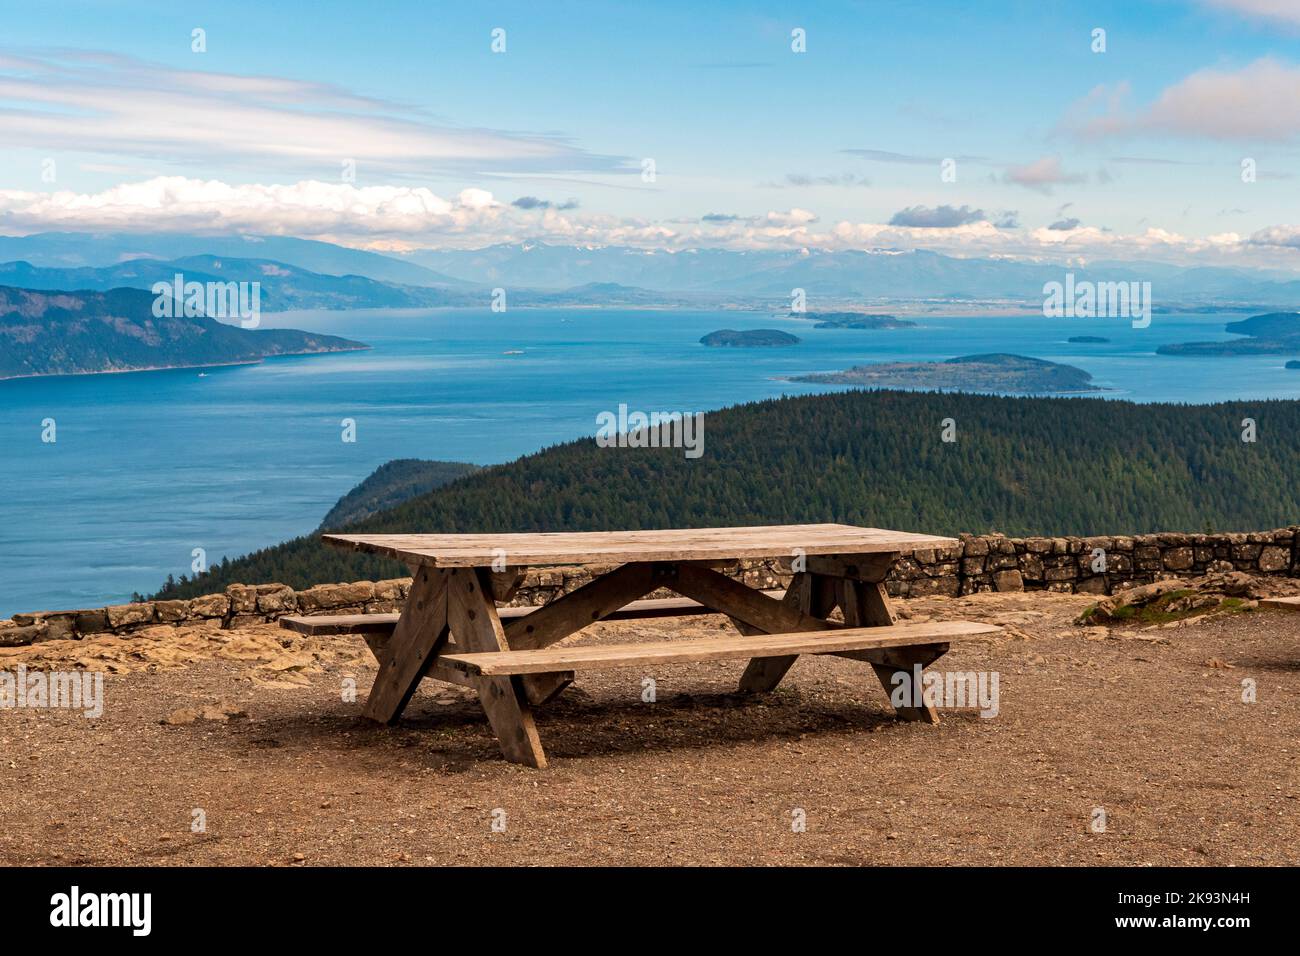 Une table de pique-nique avec vue sur les îles de San Juan depuis la tour de surveillance au sommet du mont Constitution sur l'île d'Orcas, Washington, États-Unis. Banque D'Images